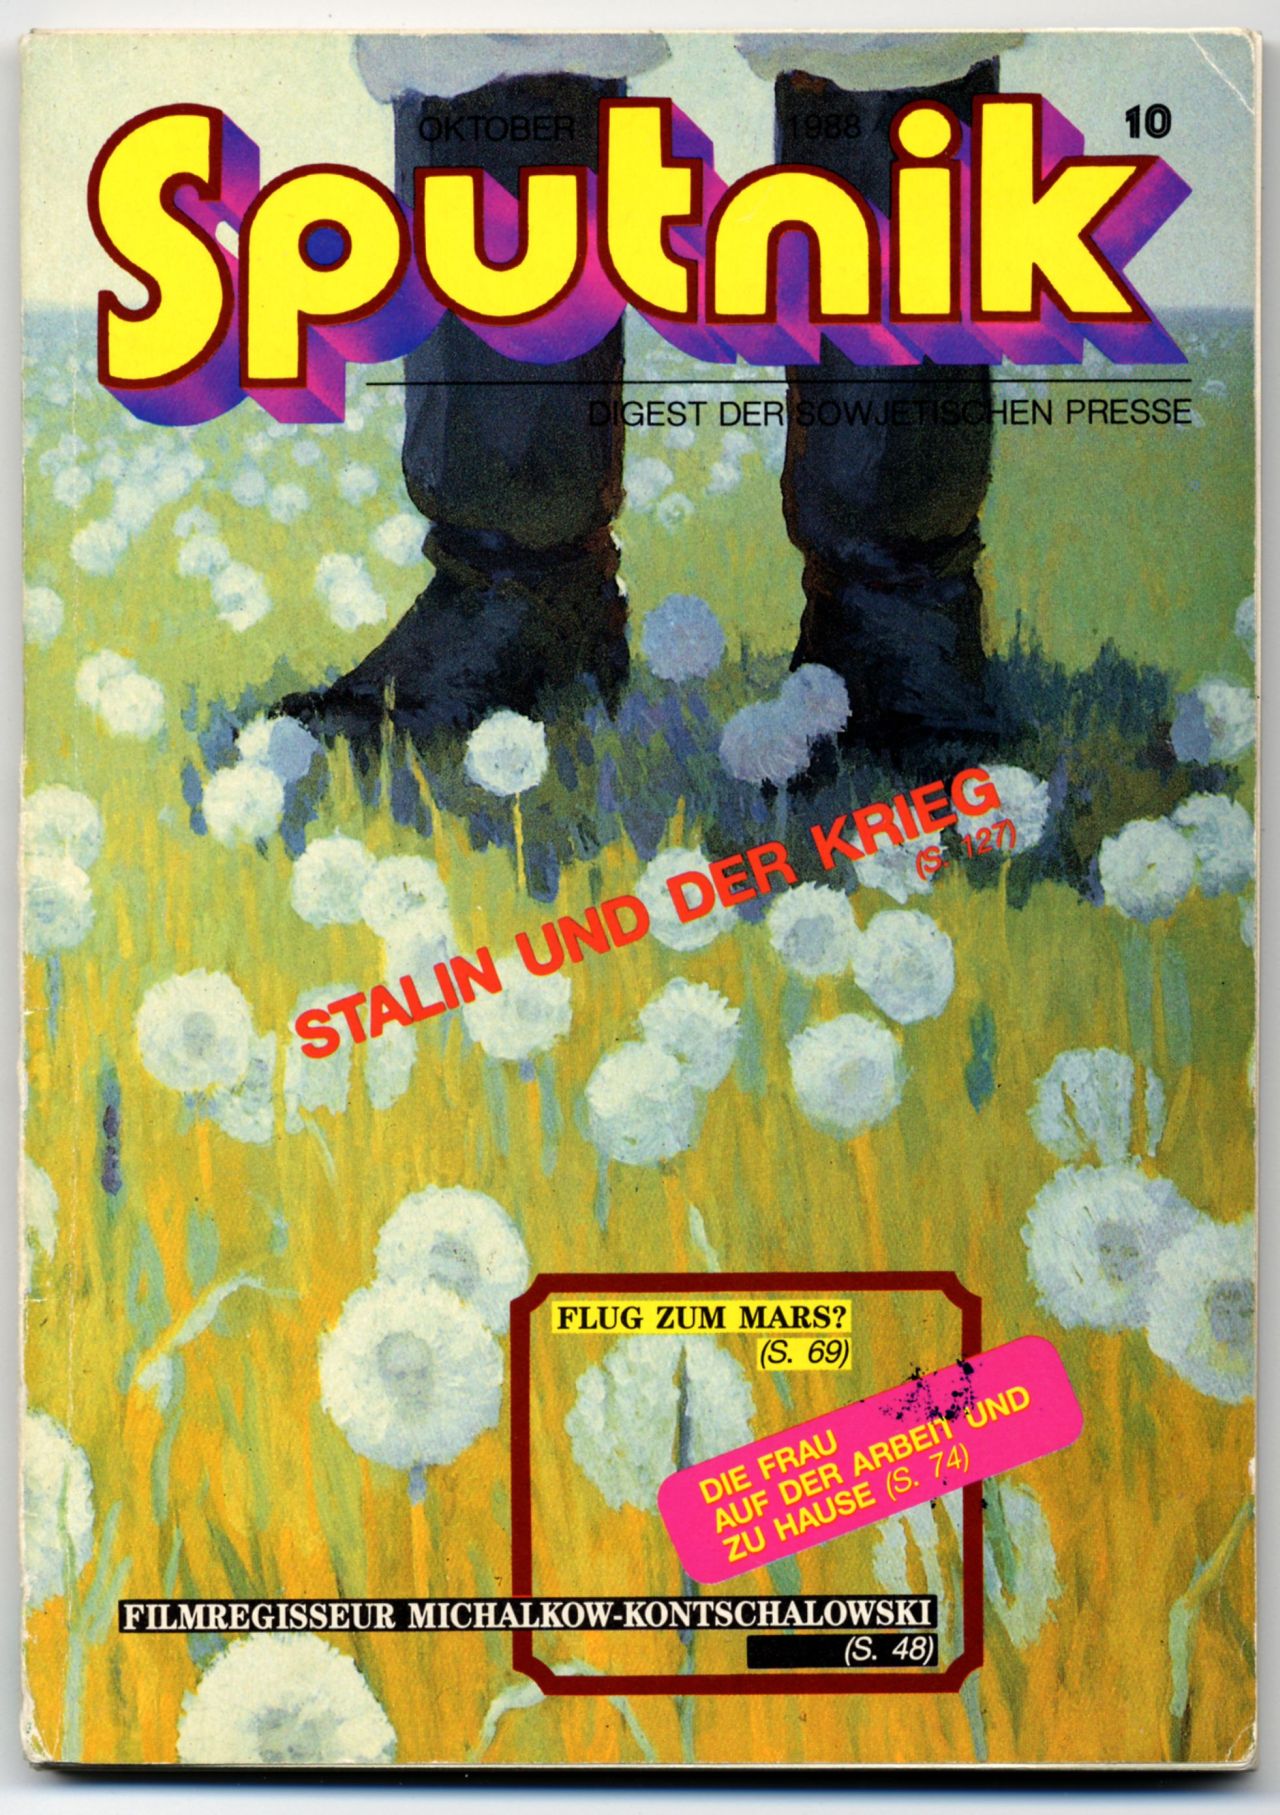 Buch Heft Sputnik September 1988 